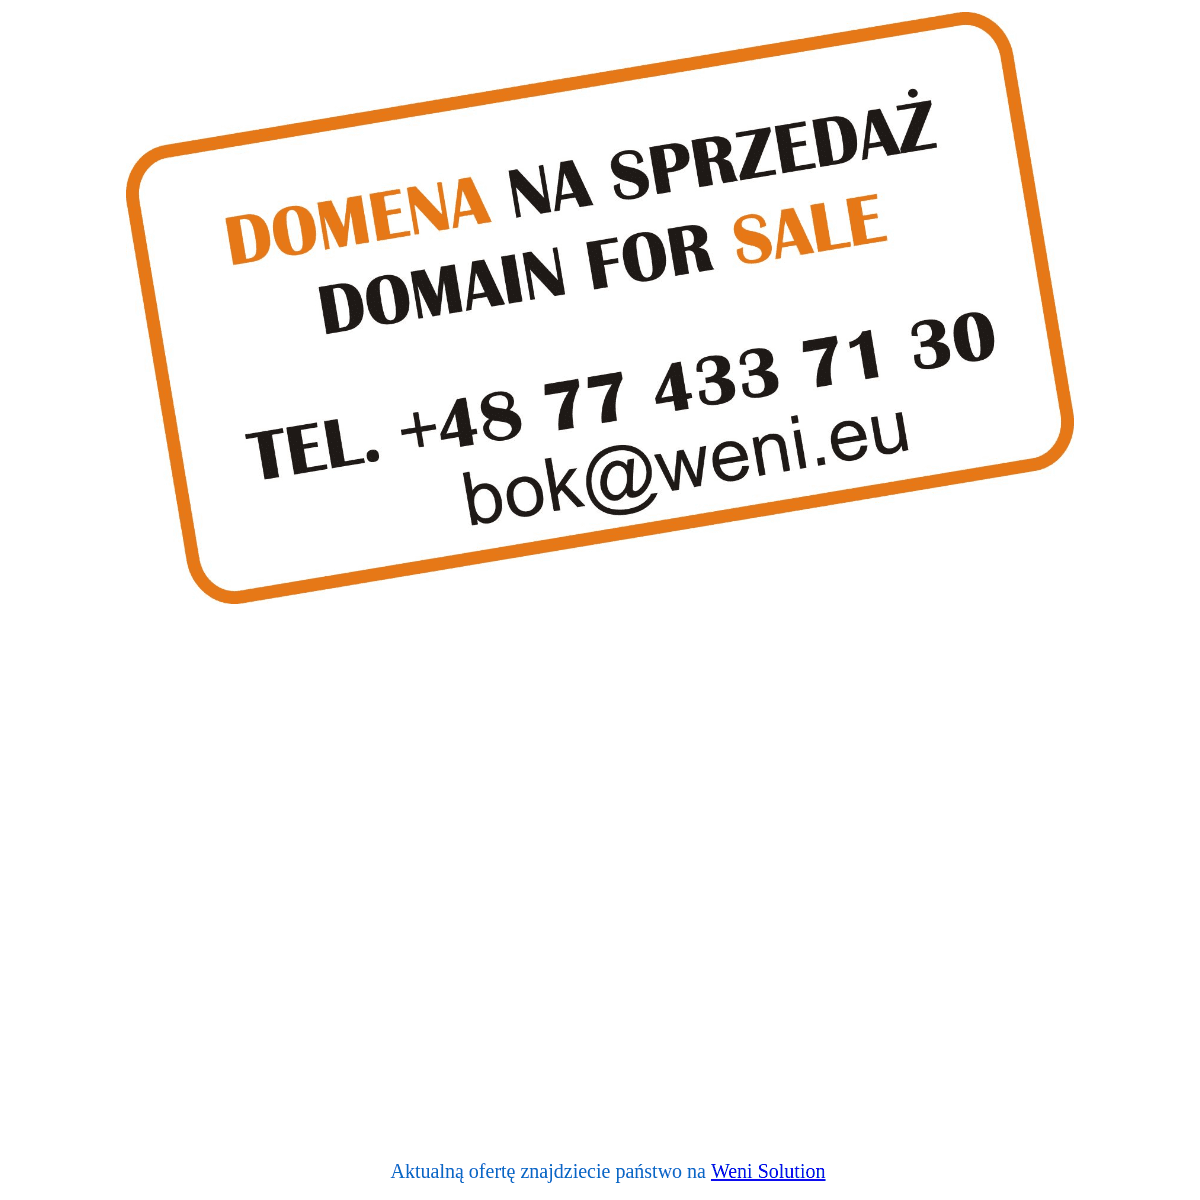 Bodorpolska.pl - Domena na sprzedaż